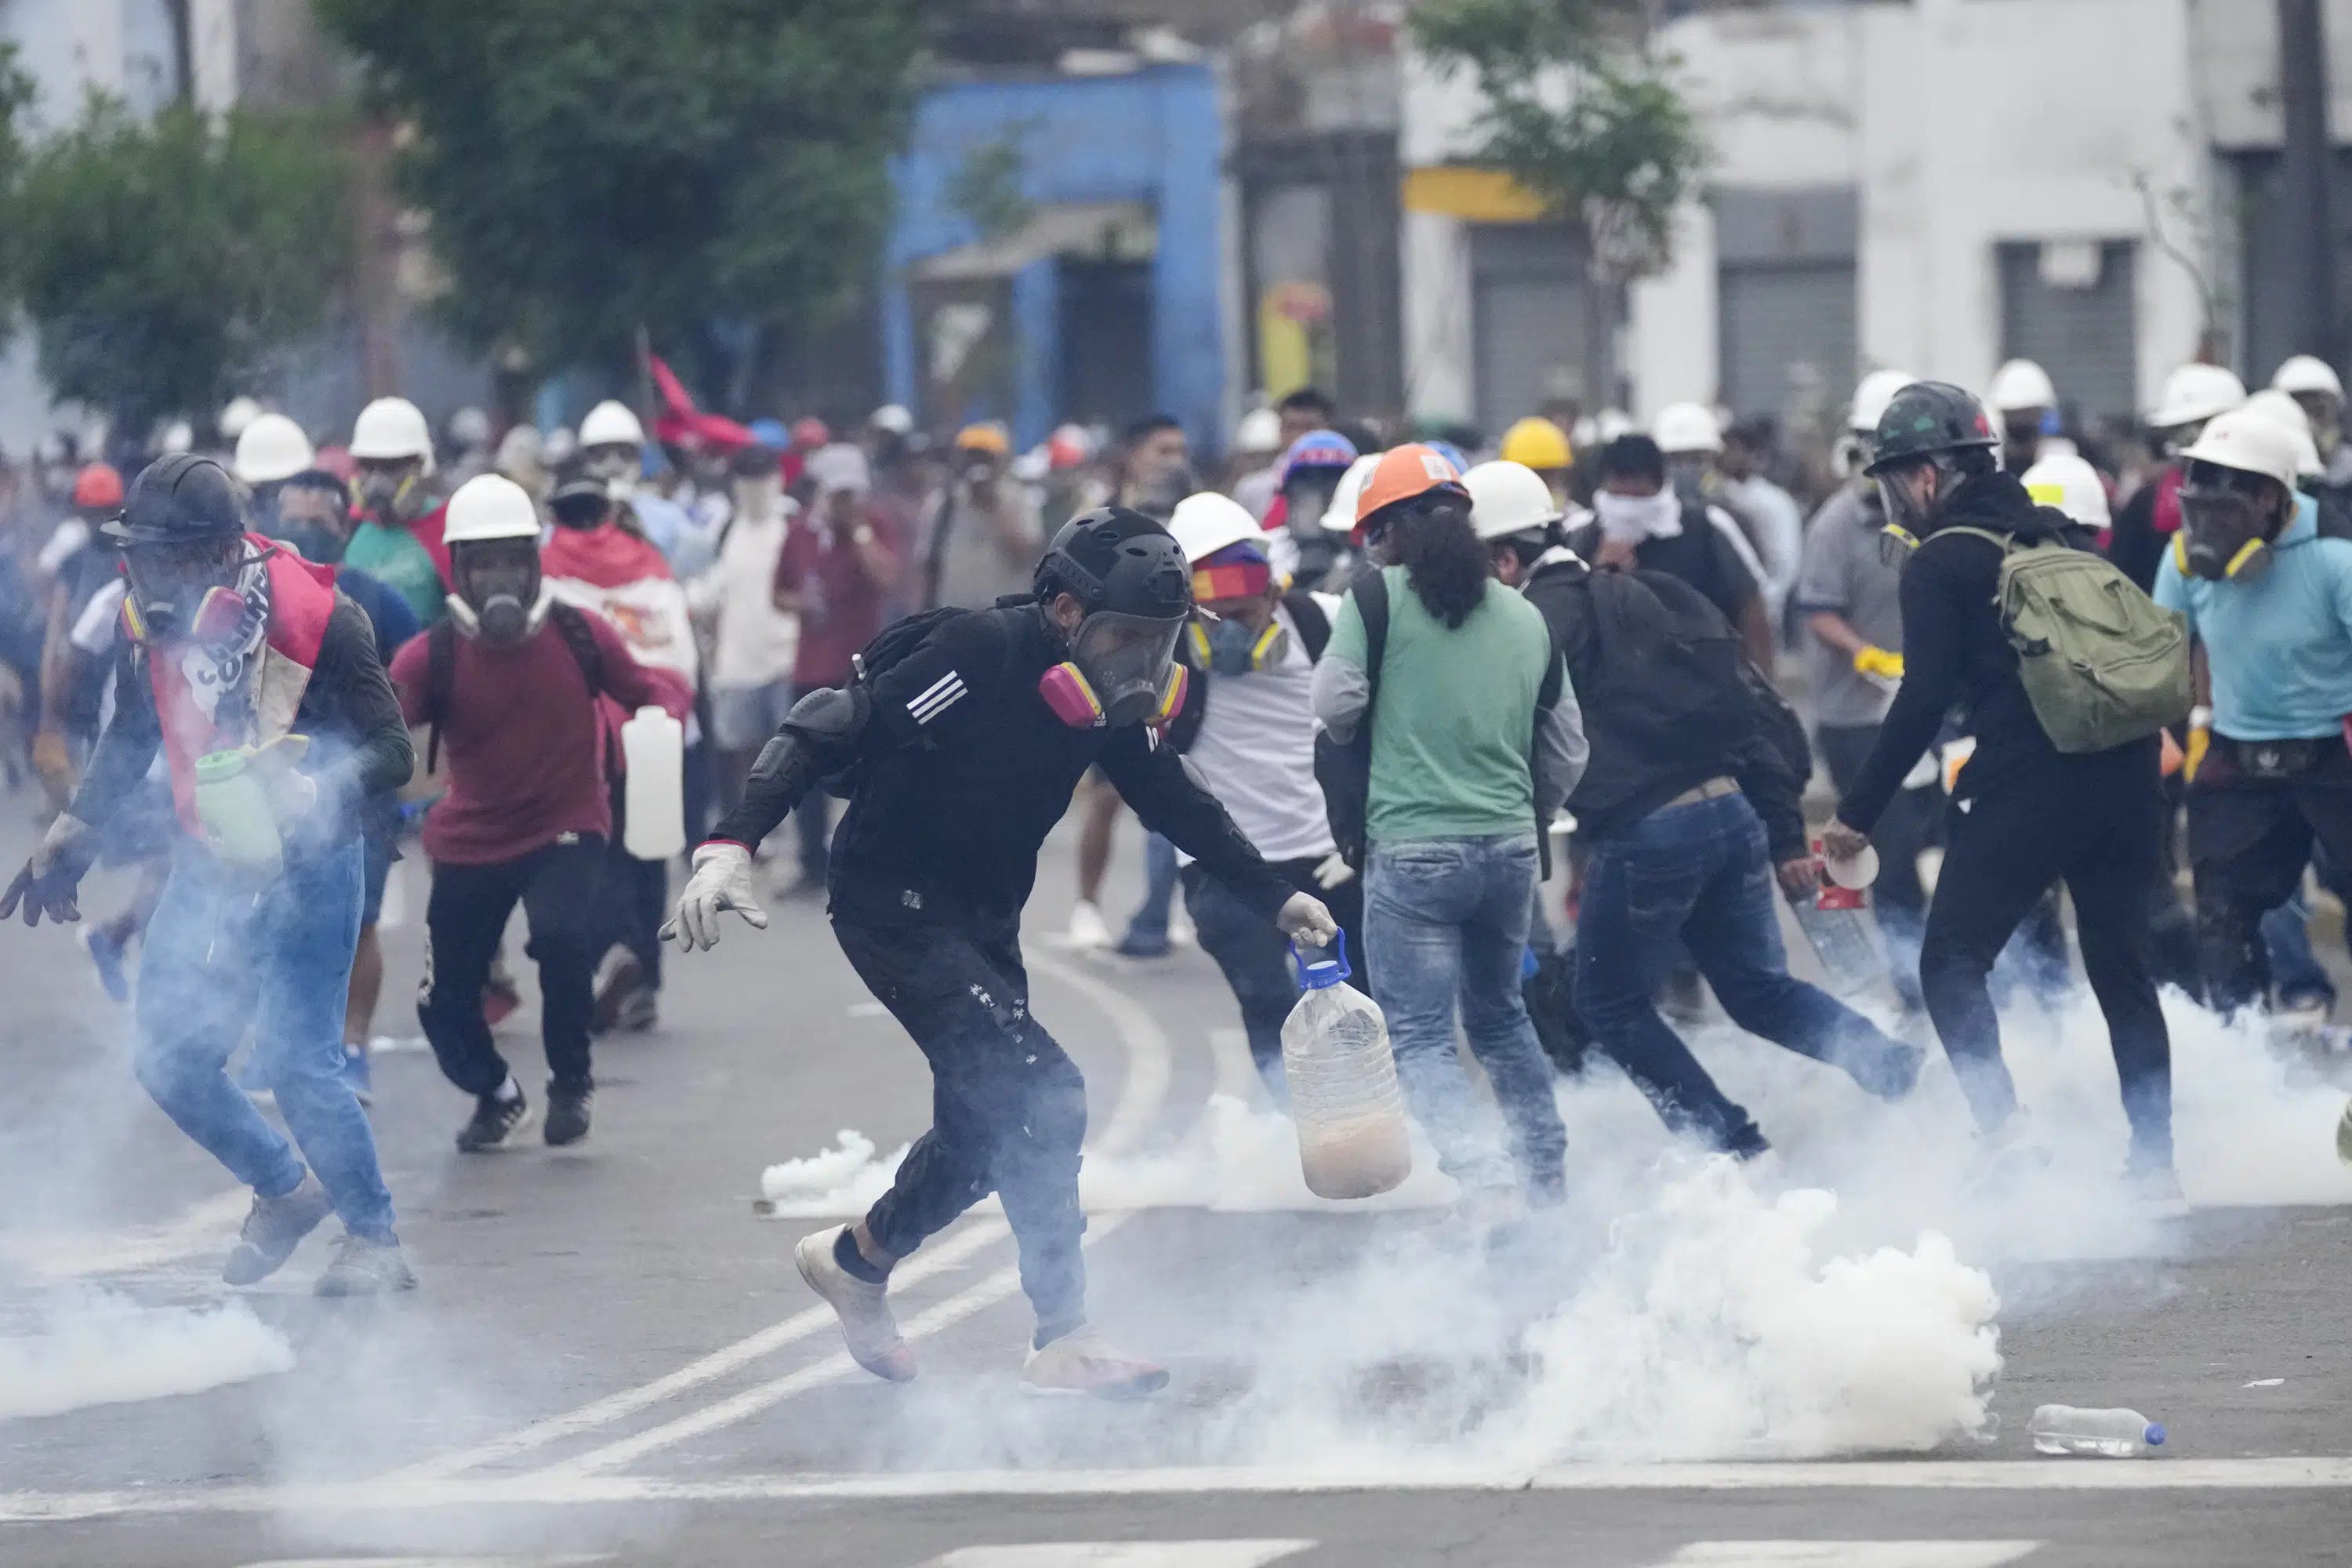 Perú: Muere otro manifestante y suman 58 los fallecidos